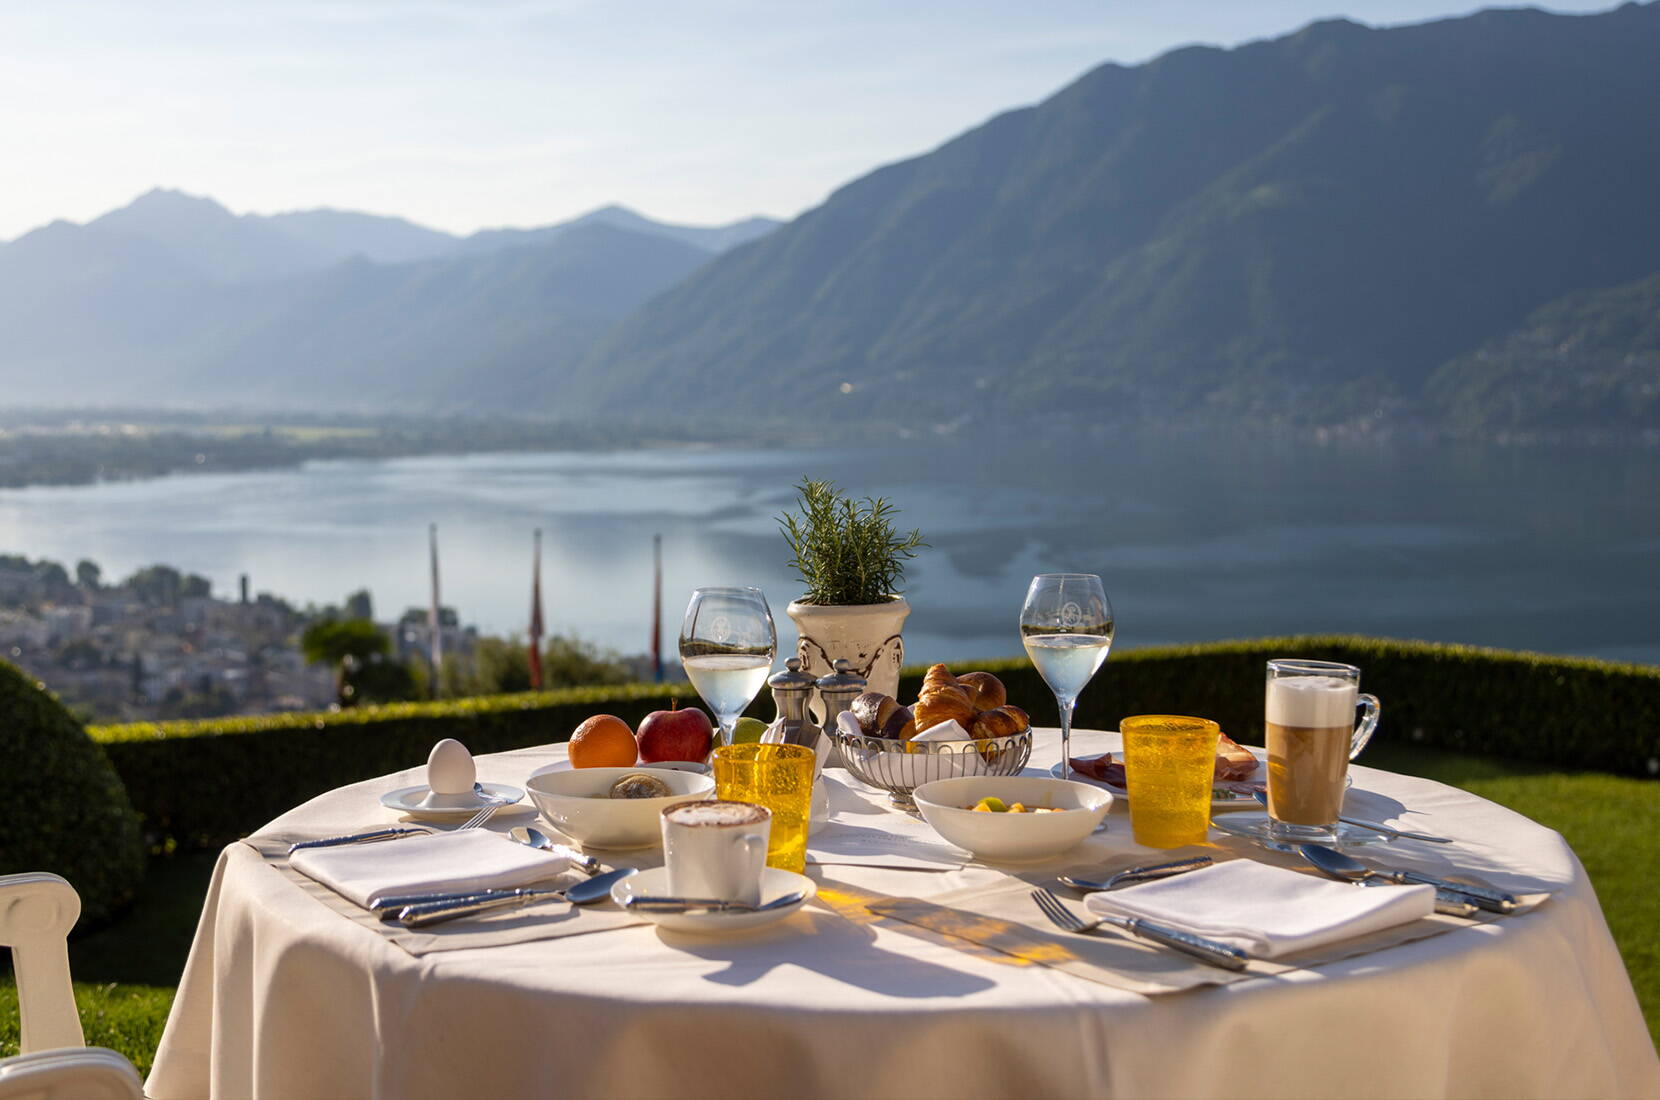 Mit der HotelCard übernachtest du in über 500 Hotels in der Schweiz und im angrenzenden Ausland mit bis zu 50% Rabatt. Vom gemütlichen Chalet in den Bündner Alpen bis zum 5-Sterne-Hotel am Genfersee ist für jeden Geschmack etwas dabei.